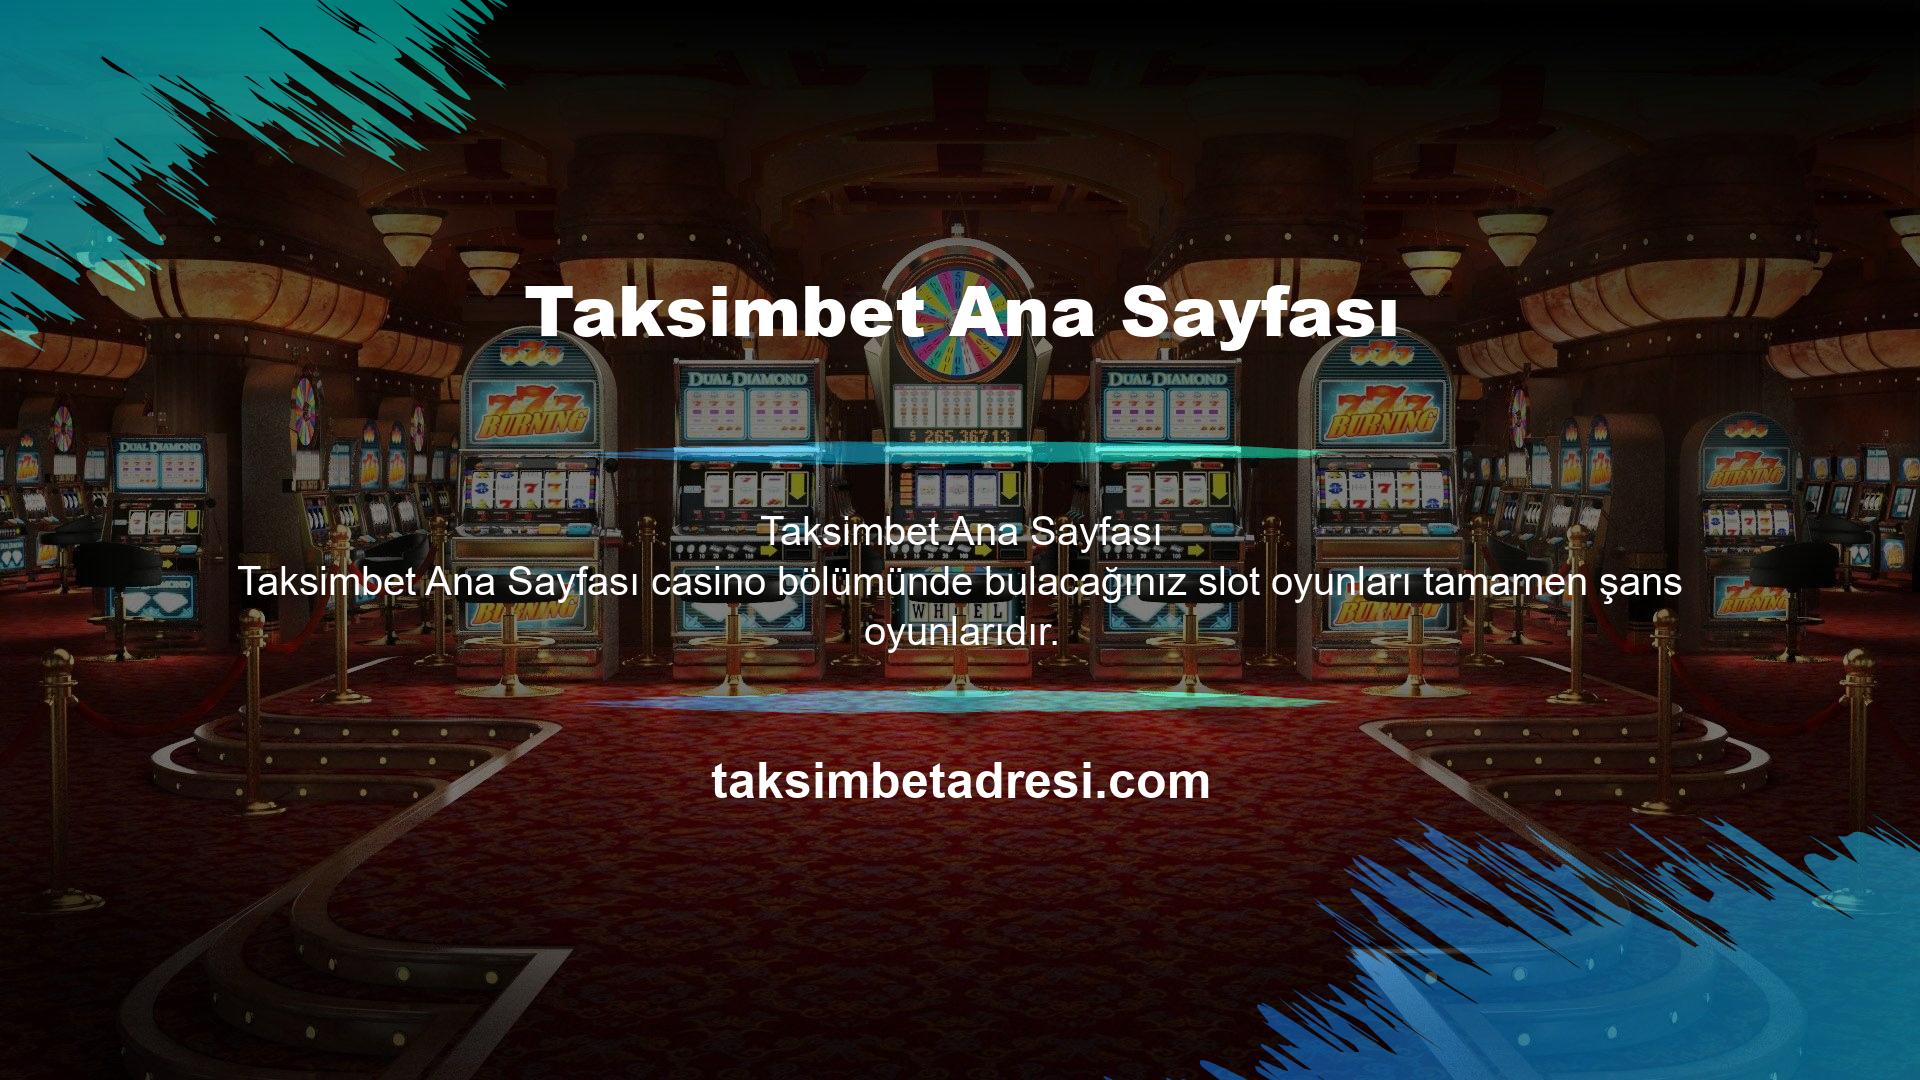 Taksimbet Bahis, oyuncularına özel gerçek oyunlar ve eğlenceli oyun butonları eklemiştir